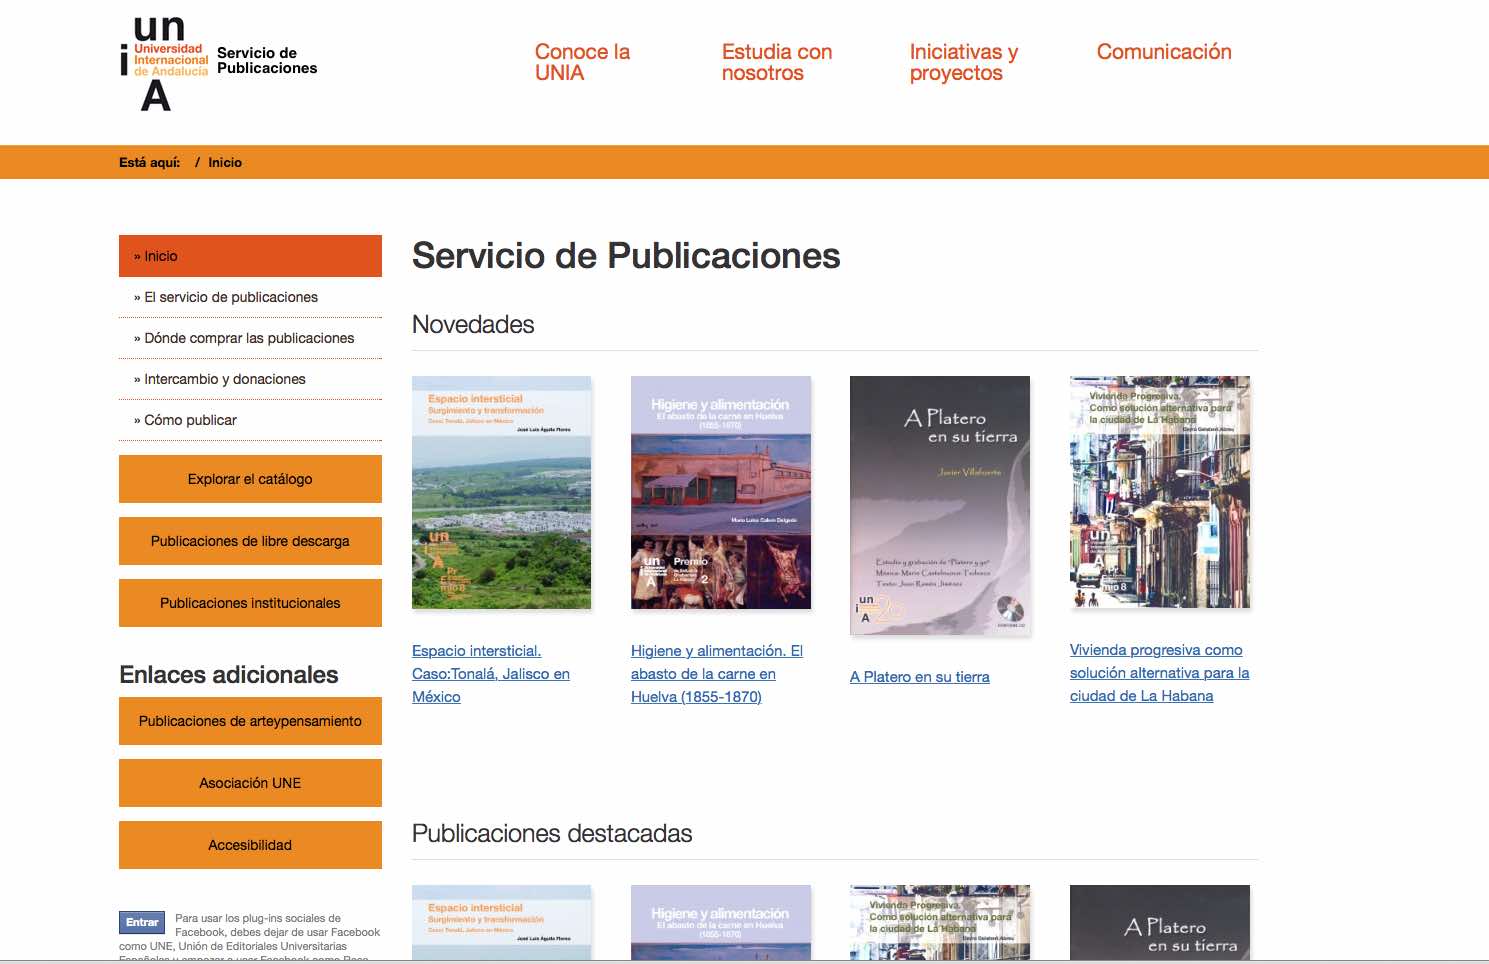 Publicaciones de la Universidad Internacional de Andalucía crea una nueva web